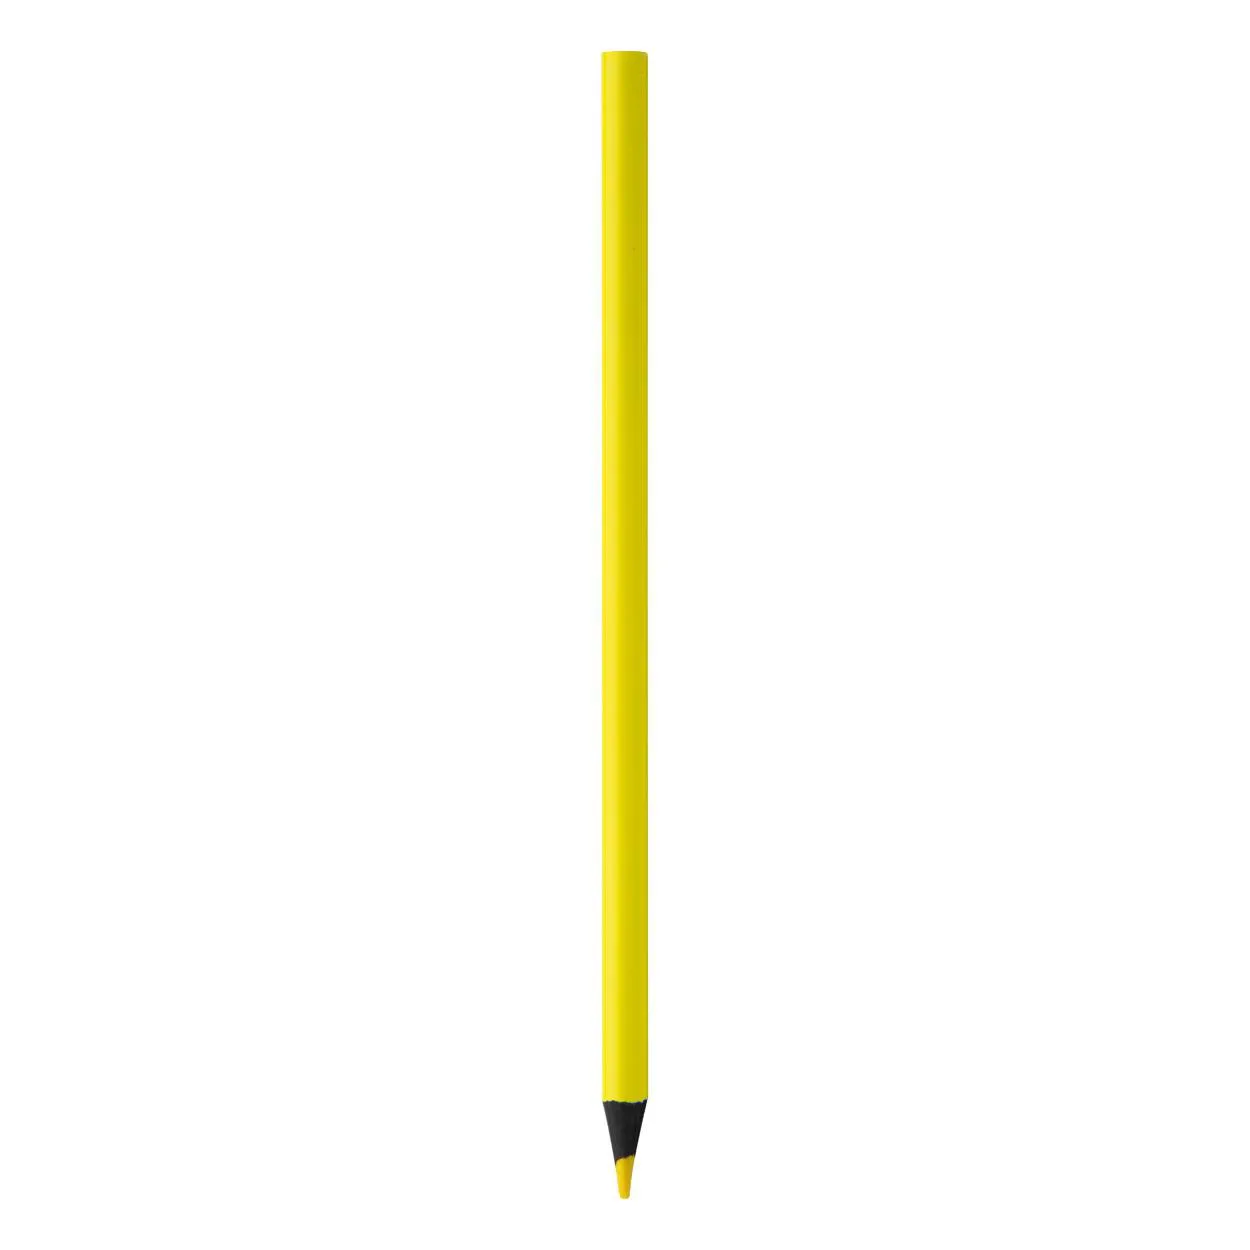 Creion evidențiator Zoldak galben